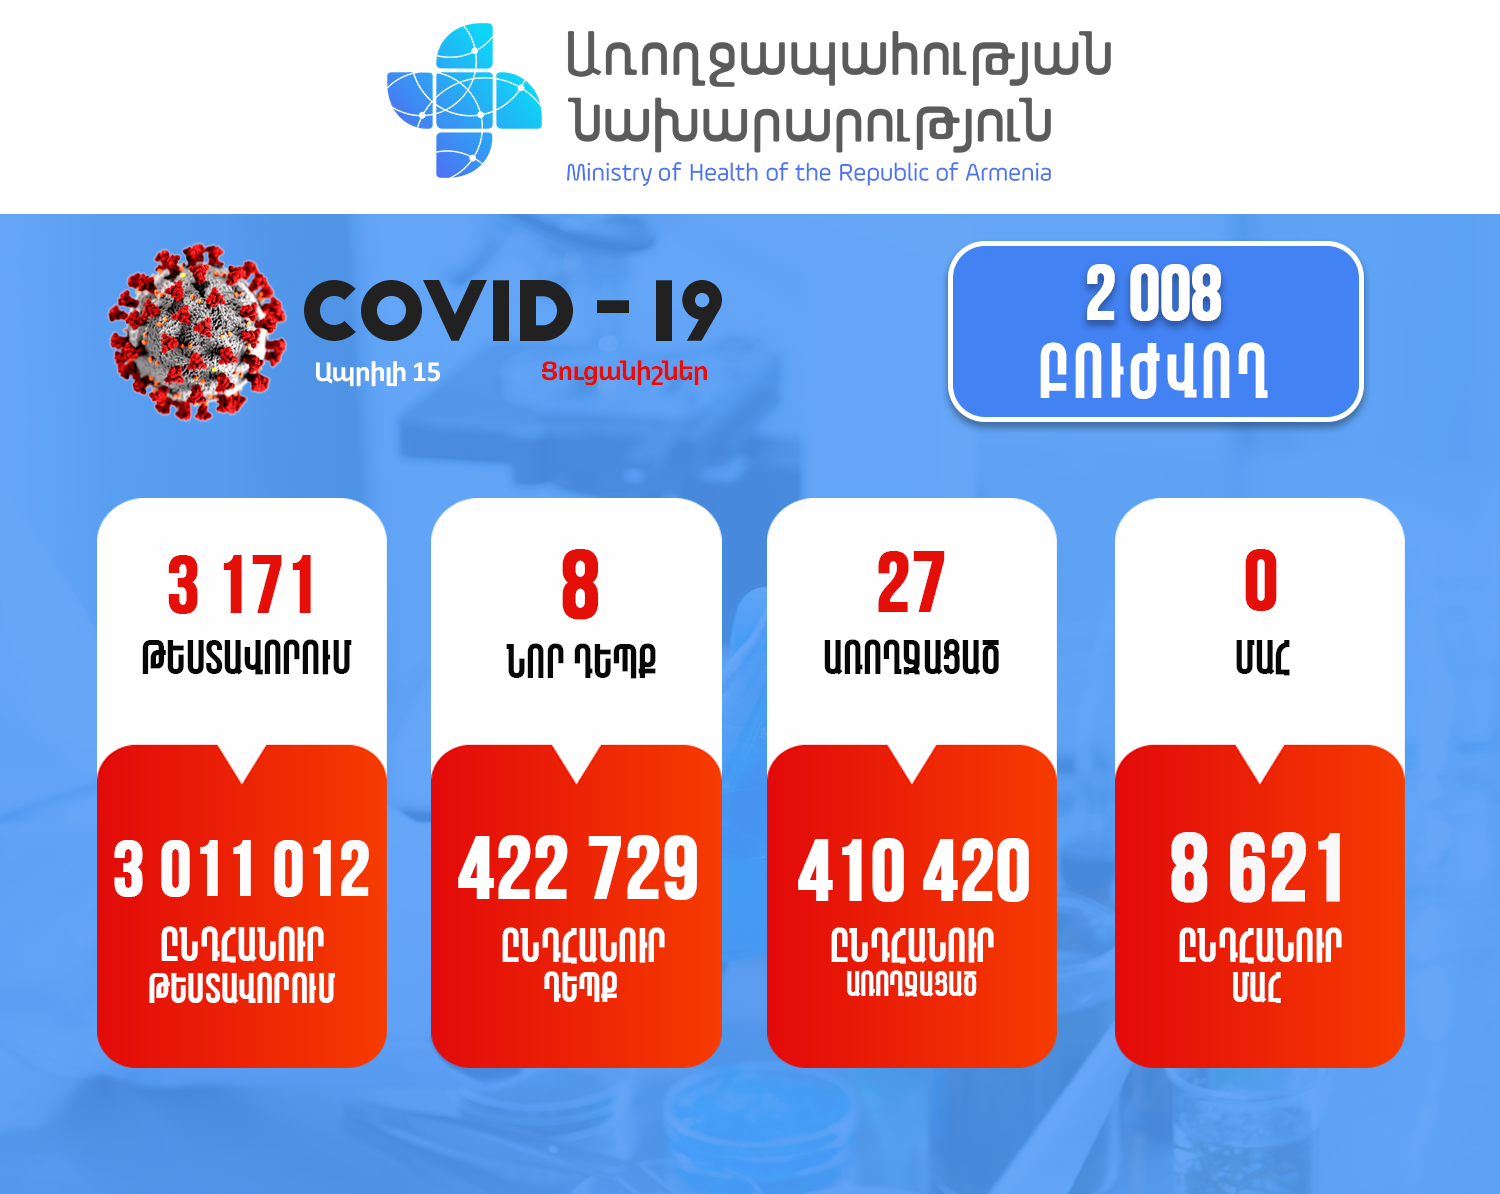 Կորոնավիրուսային հիվանդության իրավիճակը Հայաստանում